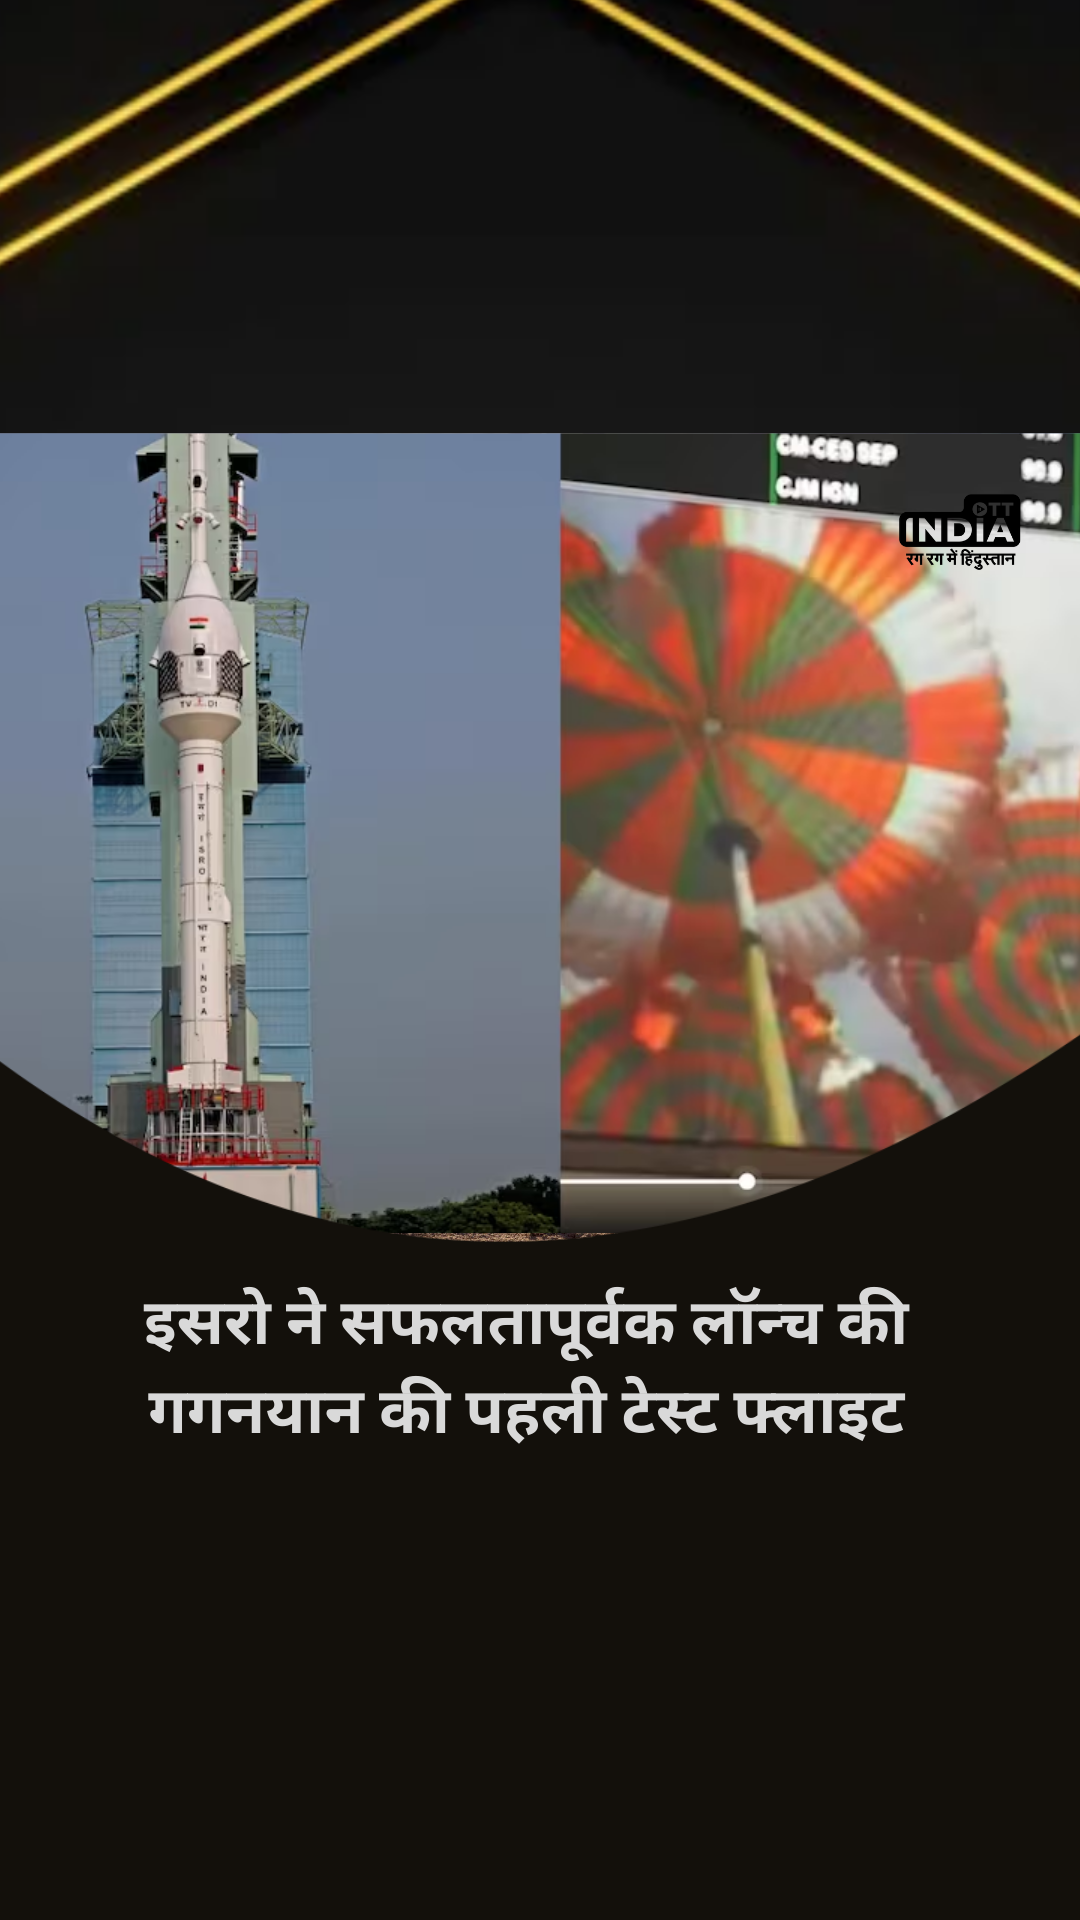 Gaganyaan Mission: डर के आगे सफलता है ! इसरो ने सफलतापूर्वक लॉन्च की गगनयान की पहली टेस्ट फ्लाइट